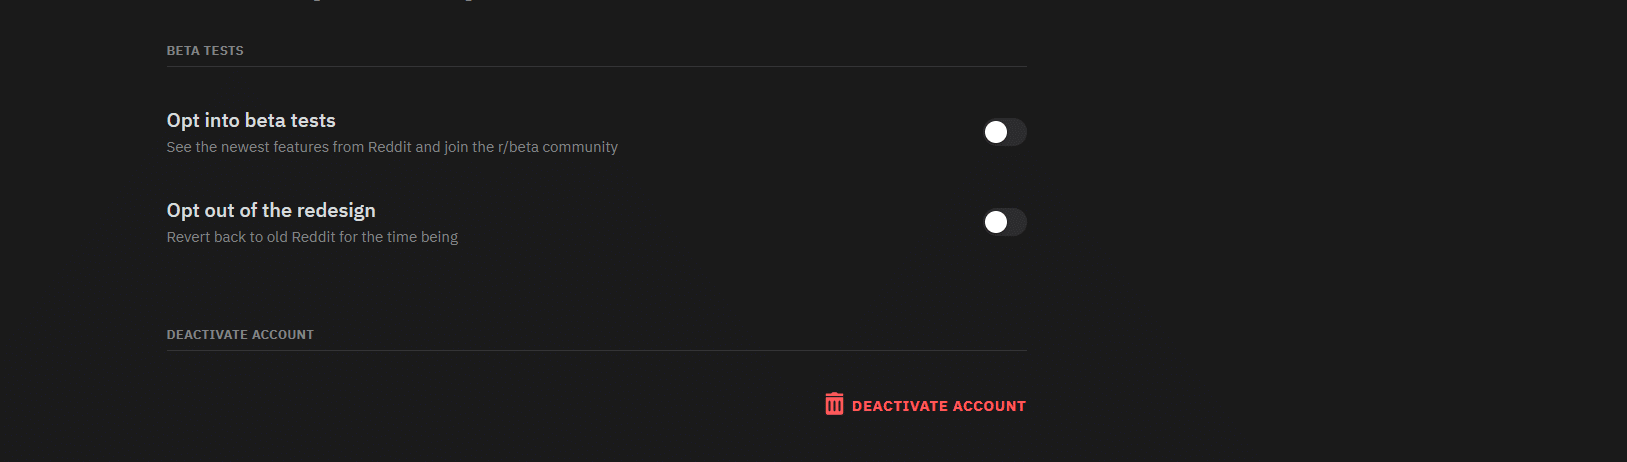 Delete Reddit Account: Deactivate option